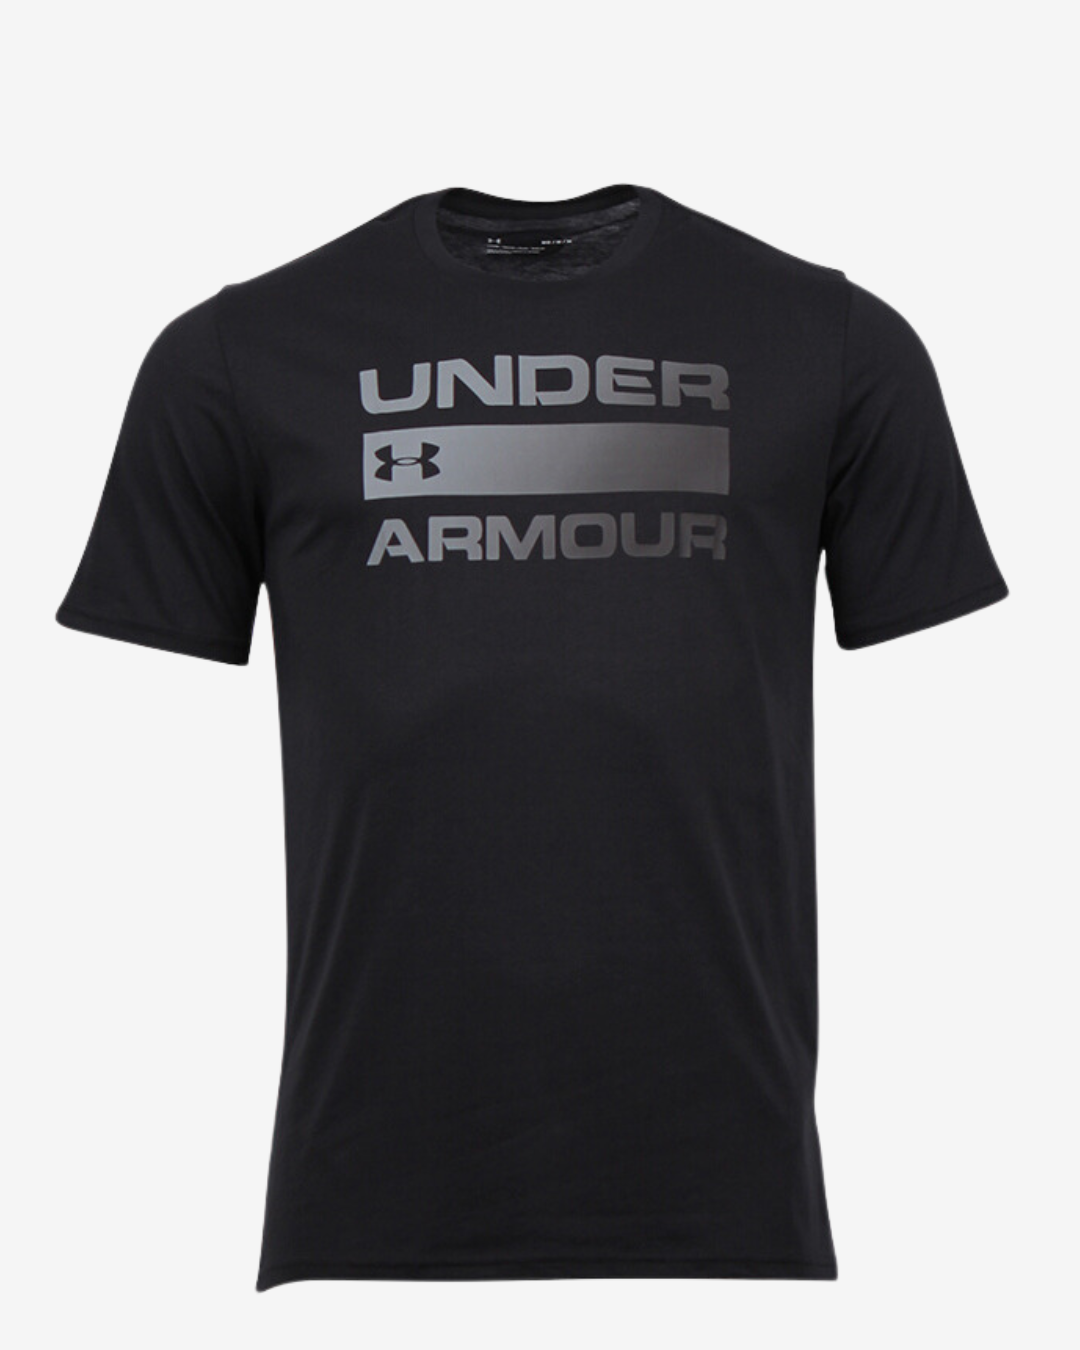 Billede af Under Armour Team issue wordmark t-shirt - Sort - Str. S - Modish.dk